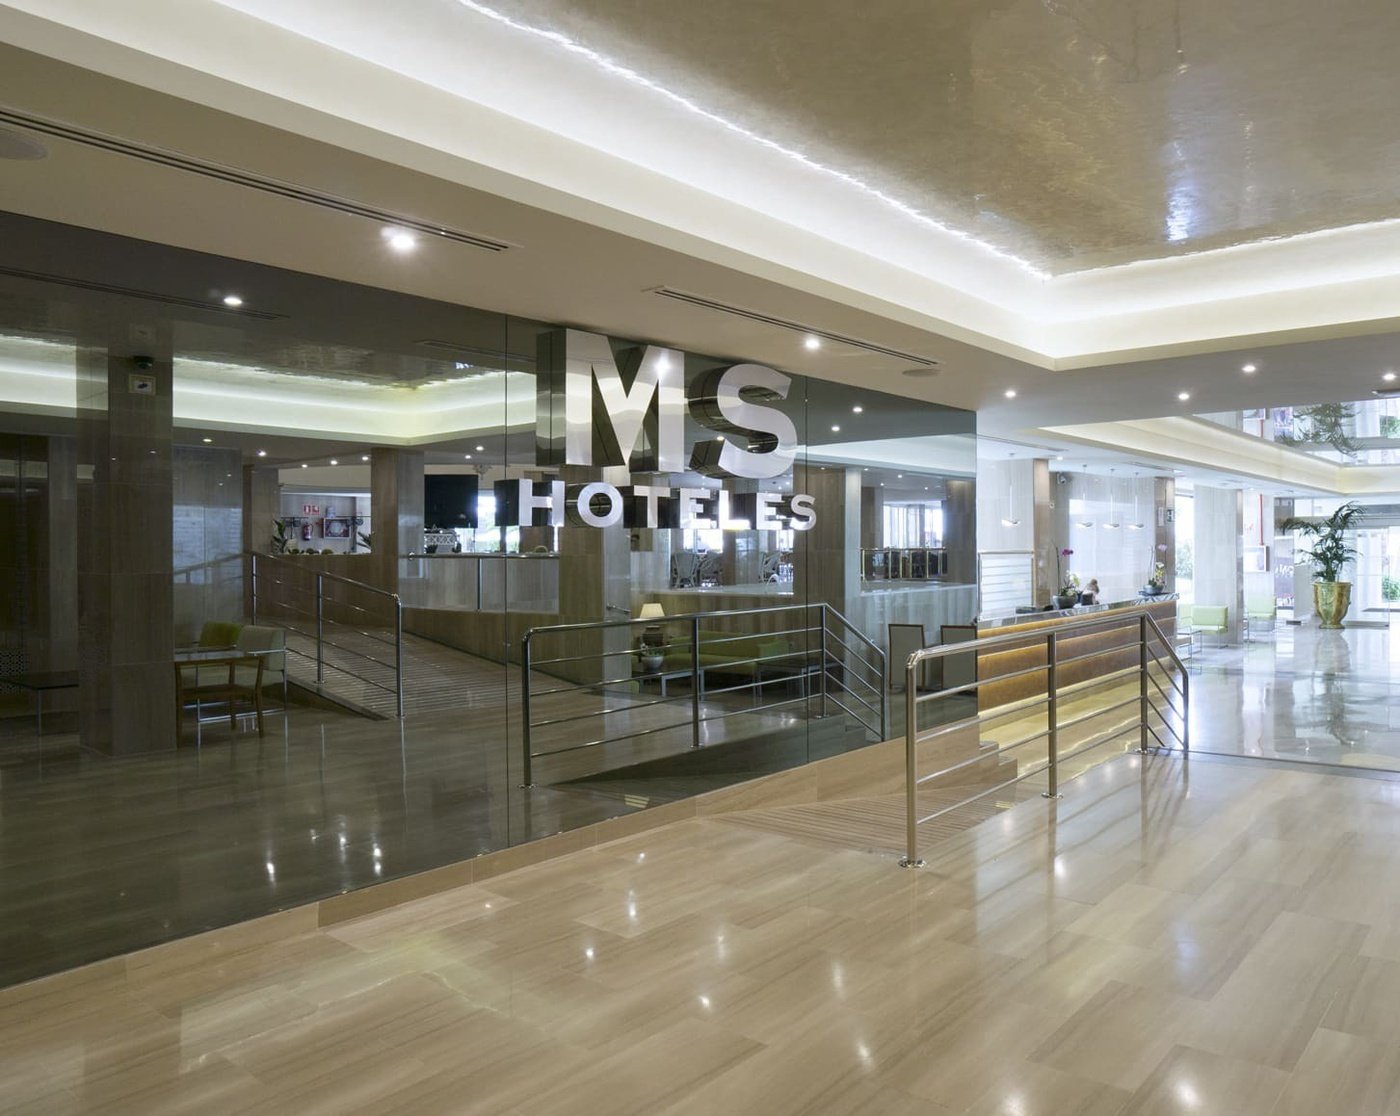 MS Hoteles | Web Oficial | Hoteles en Málaga, Torremolinos y Cabra